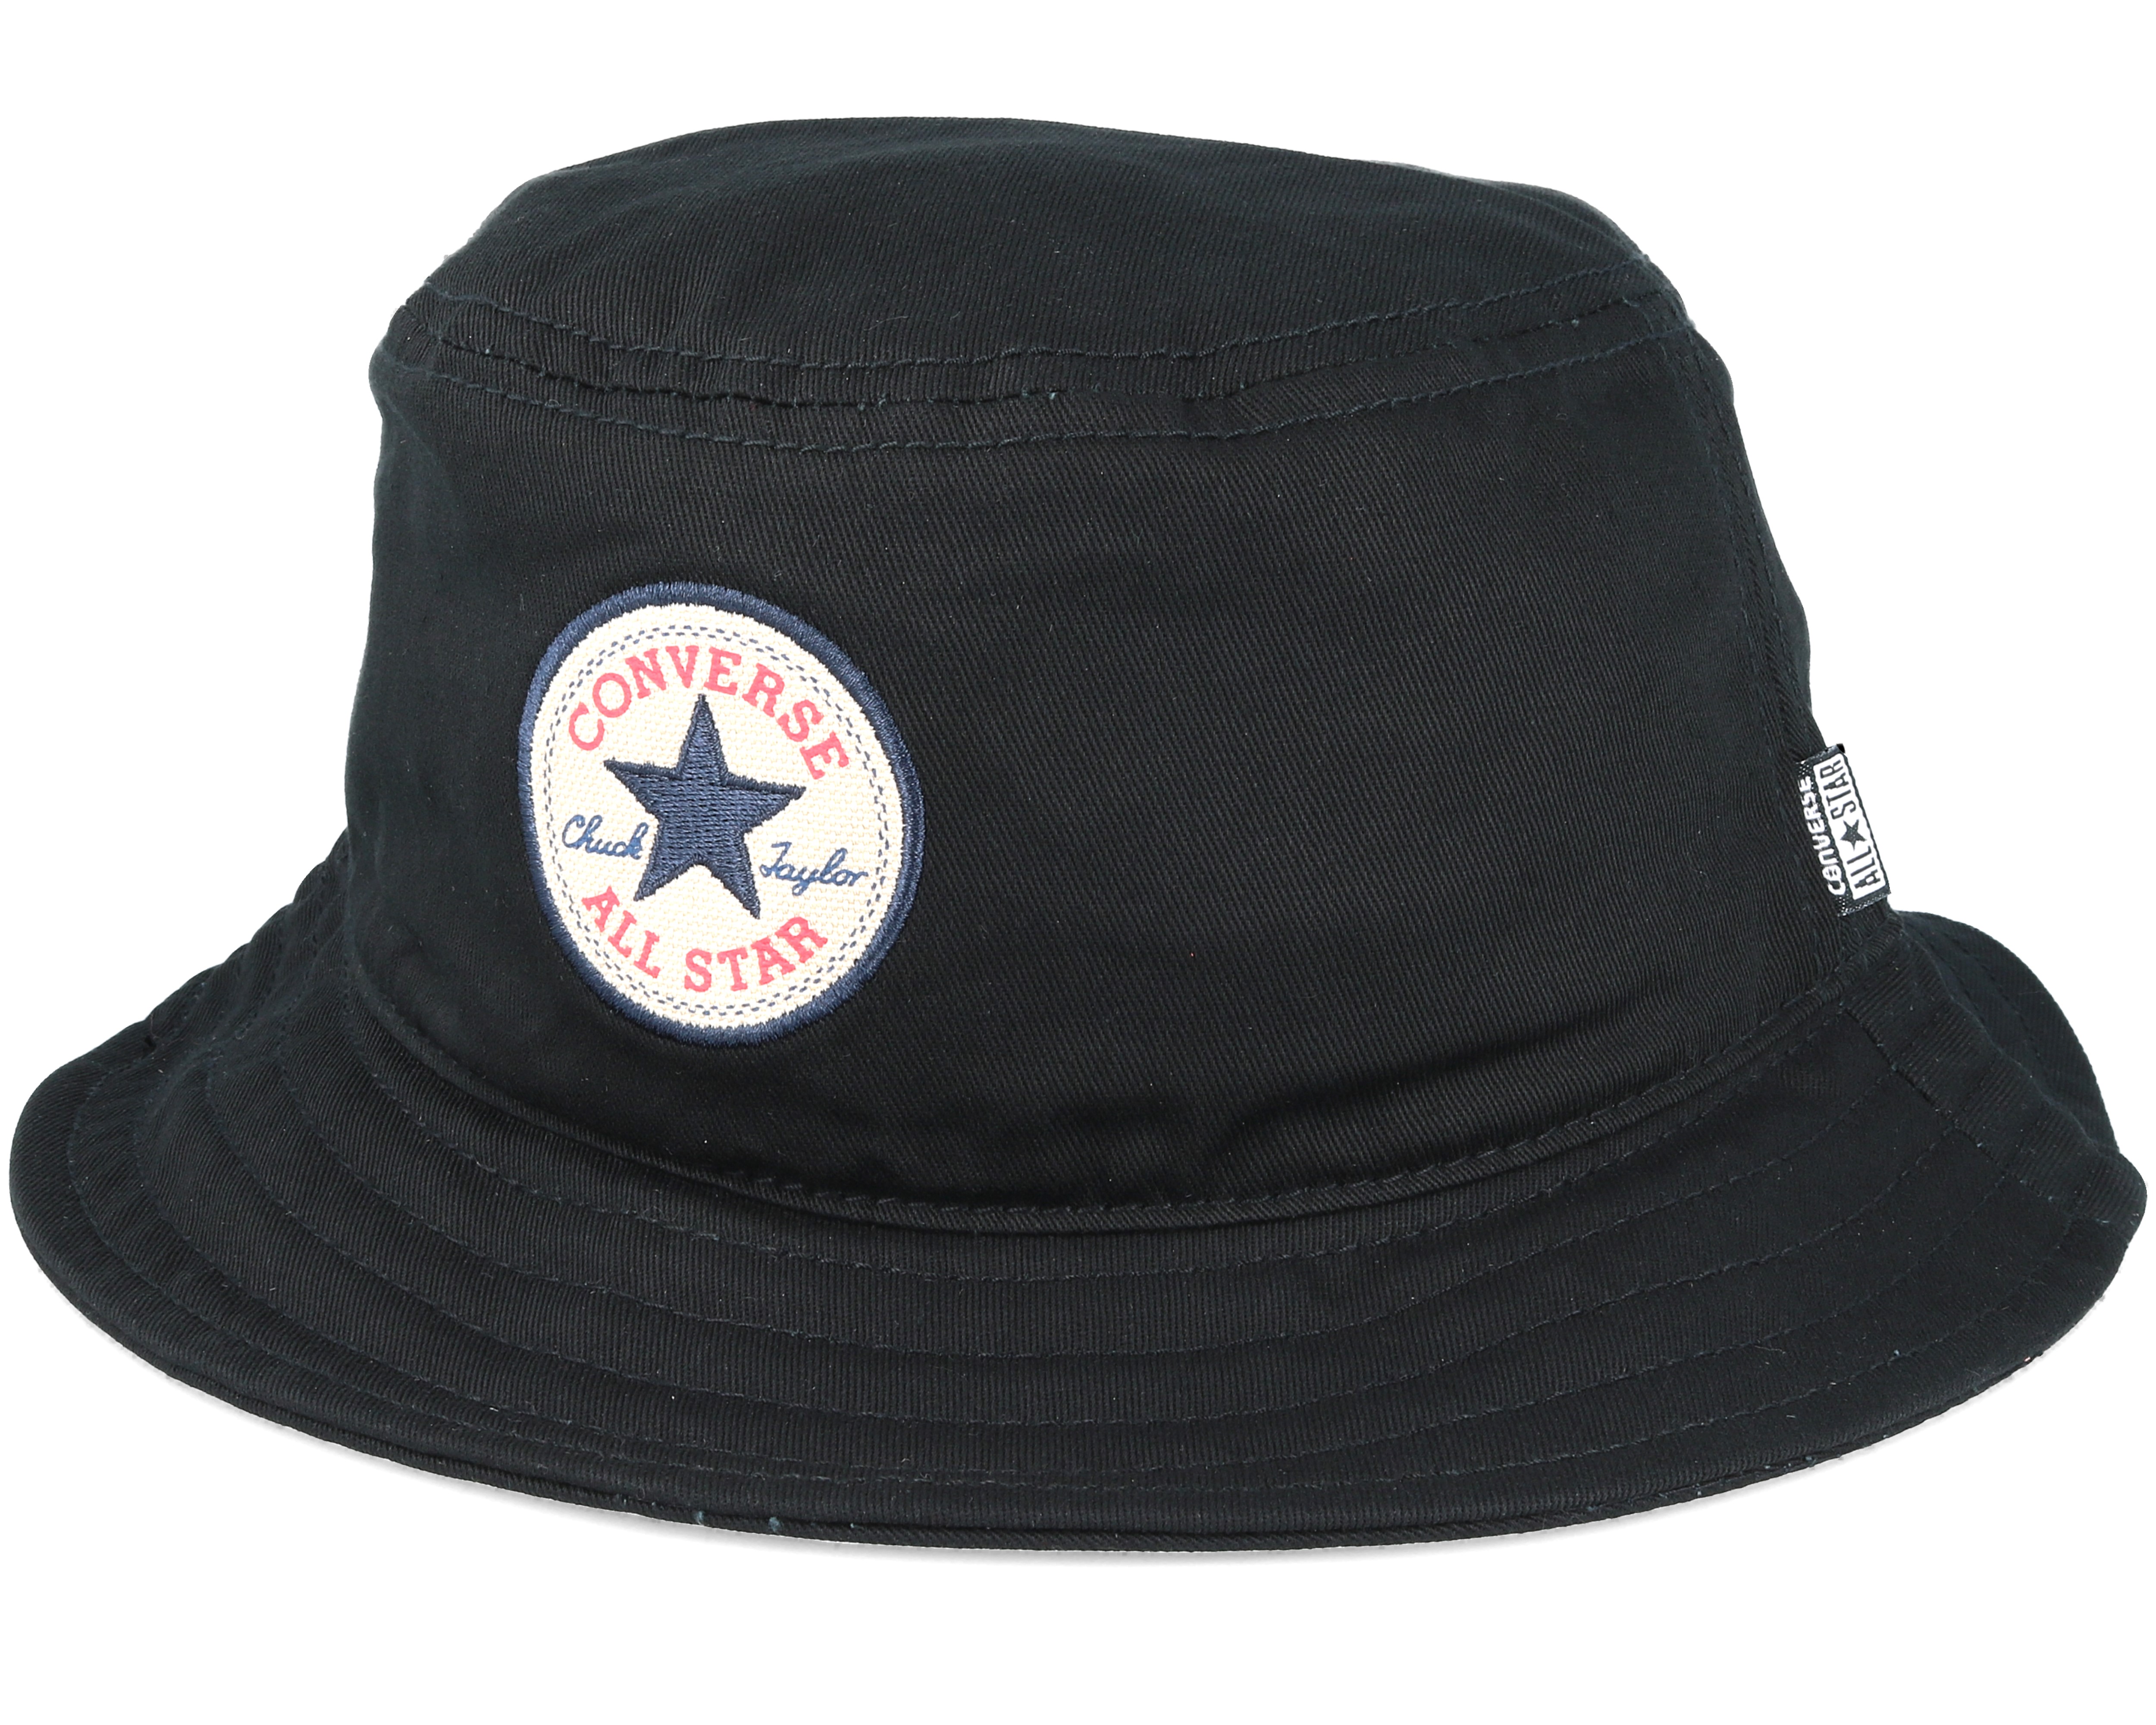 Black Bucket - Converse hat |